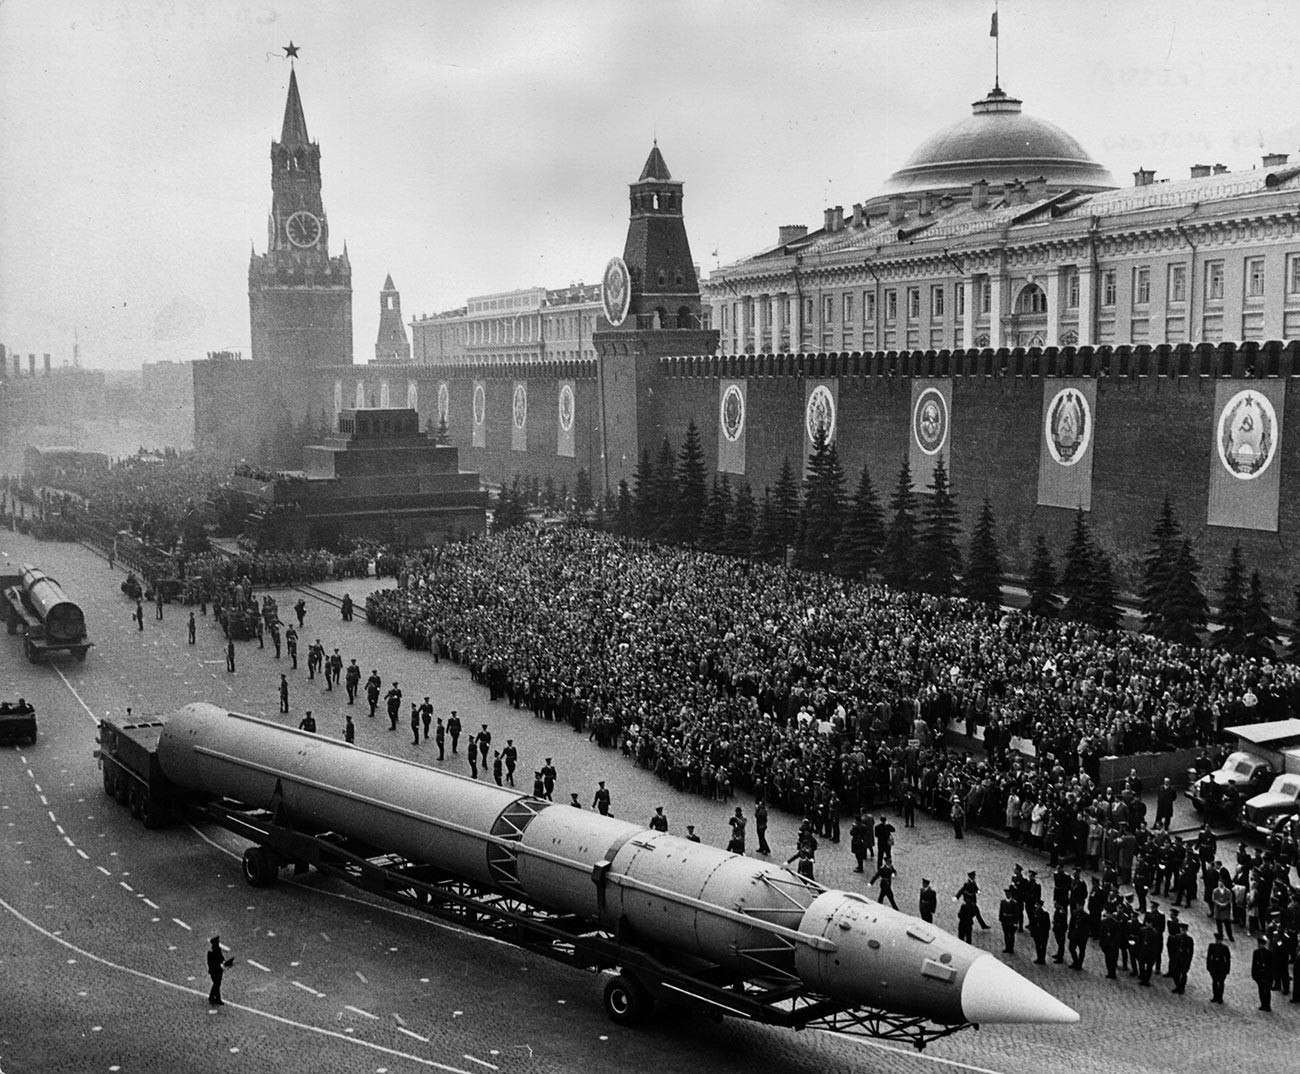 Un misil intercontinental ruso cruzando la Plaza Roja durante el desfile militar en Moscú para conmemorar el 20º aniversario del fin de la guerra en Europa.